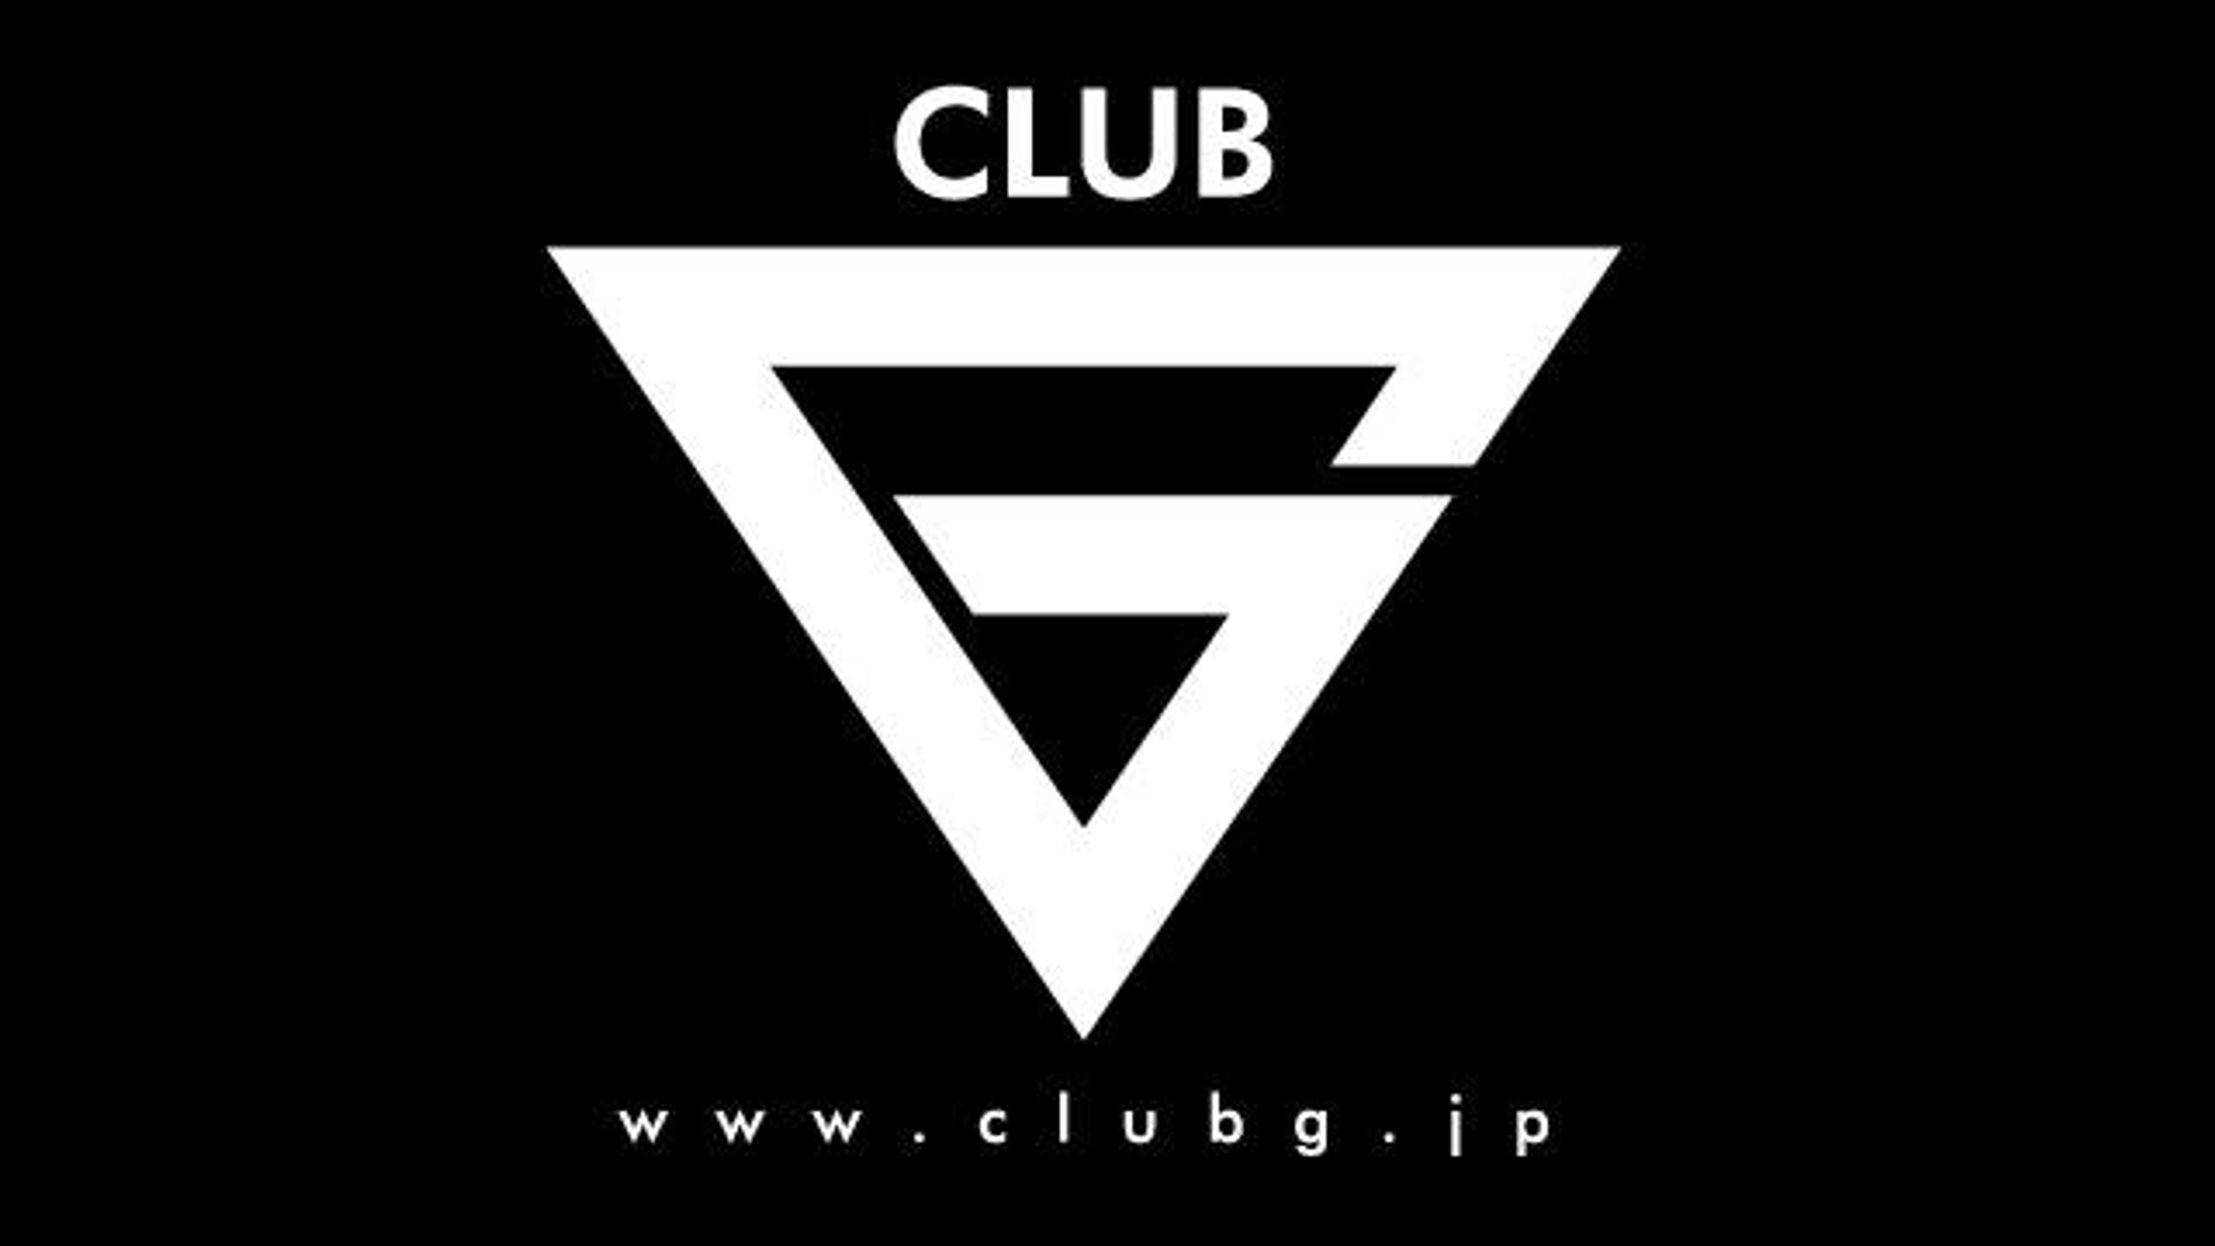 club G hiroshima